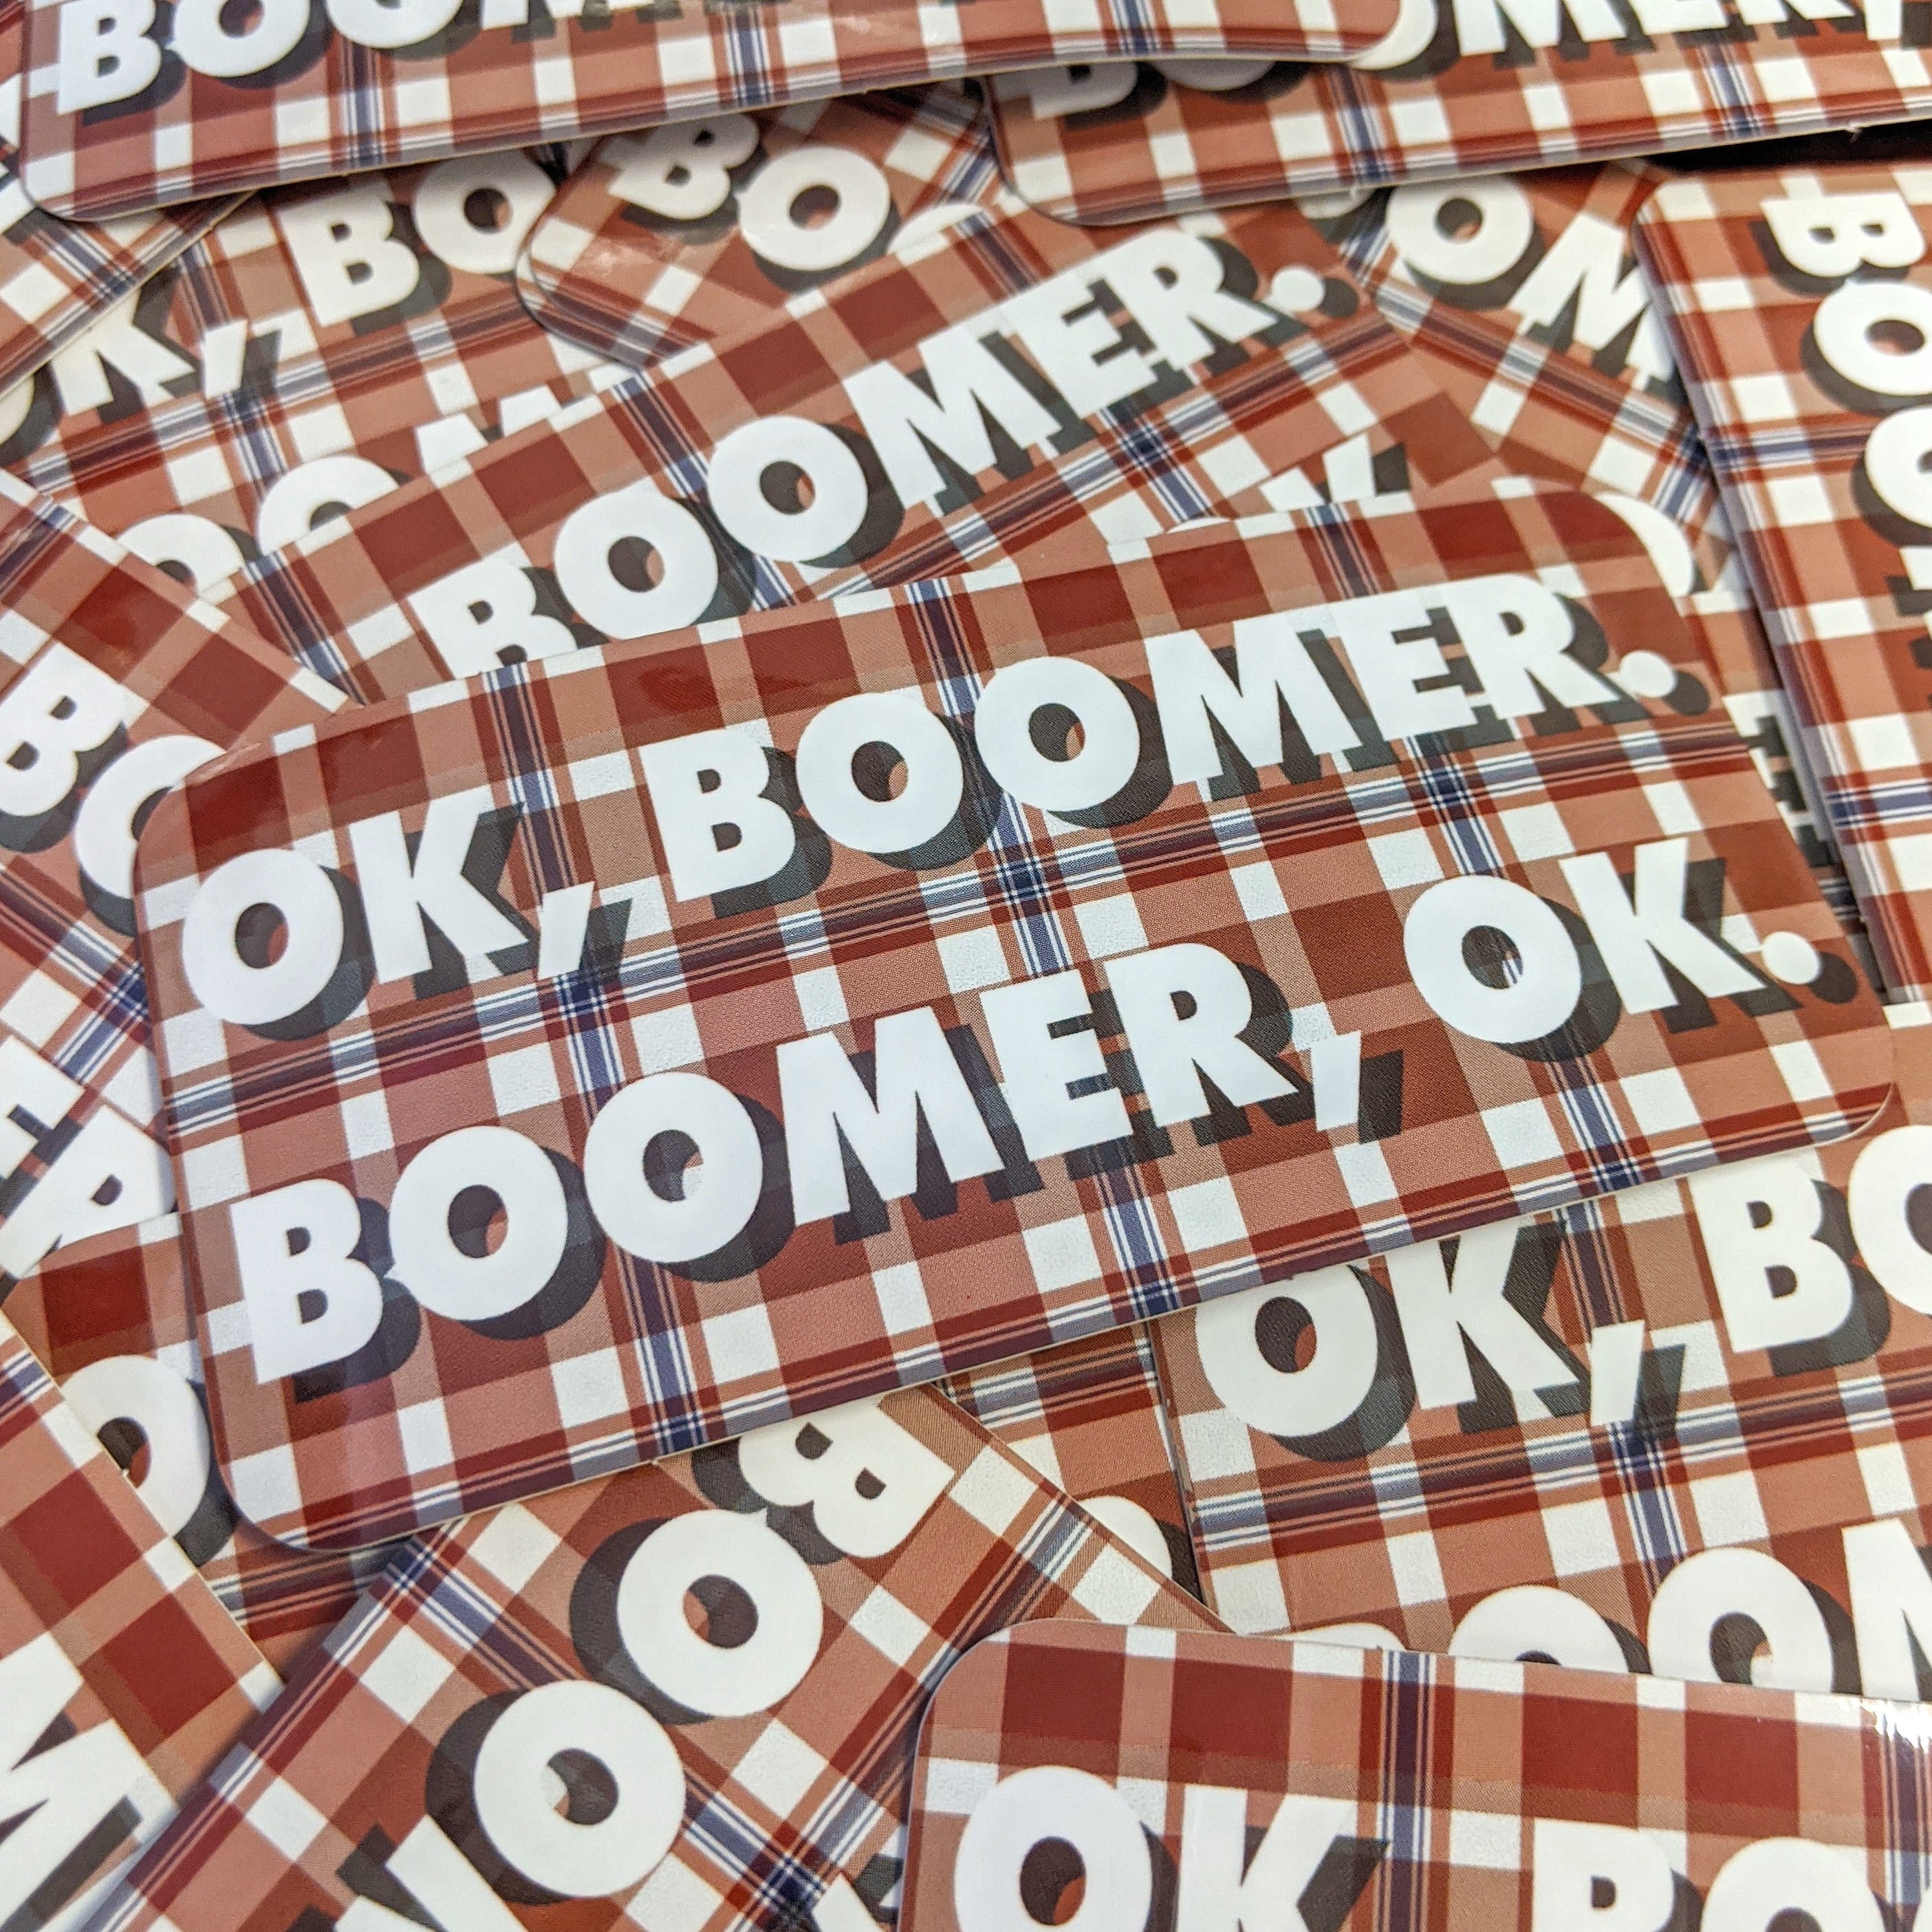 OK Boomer sticker